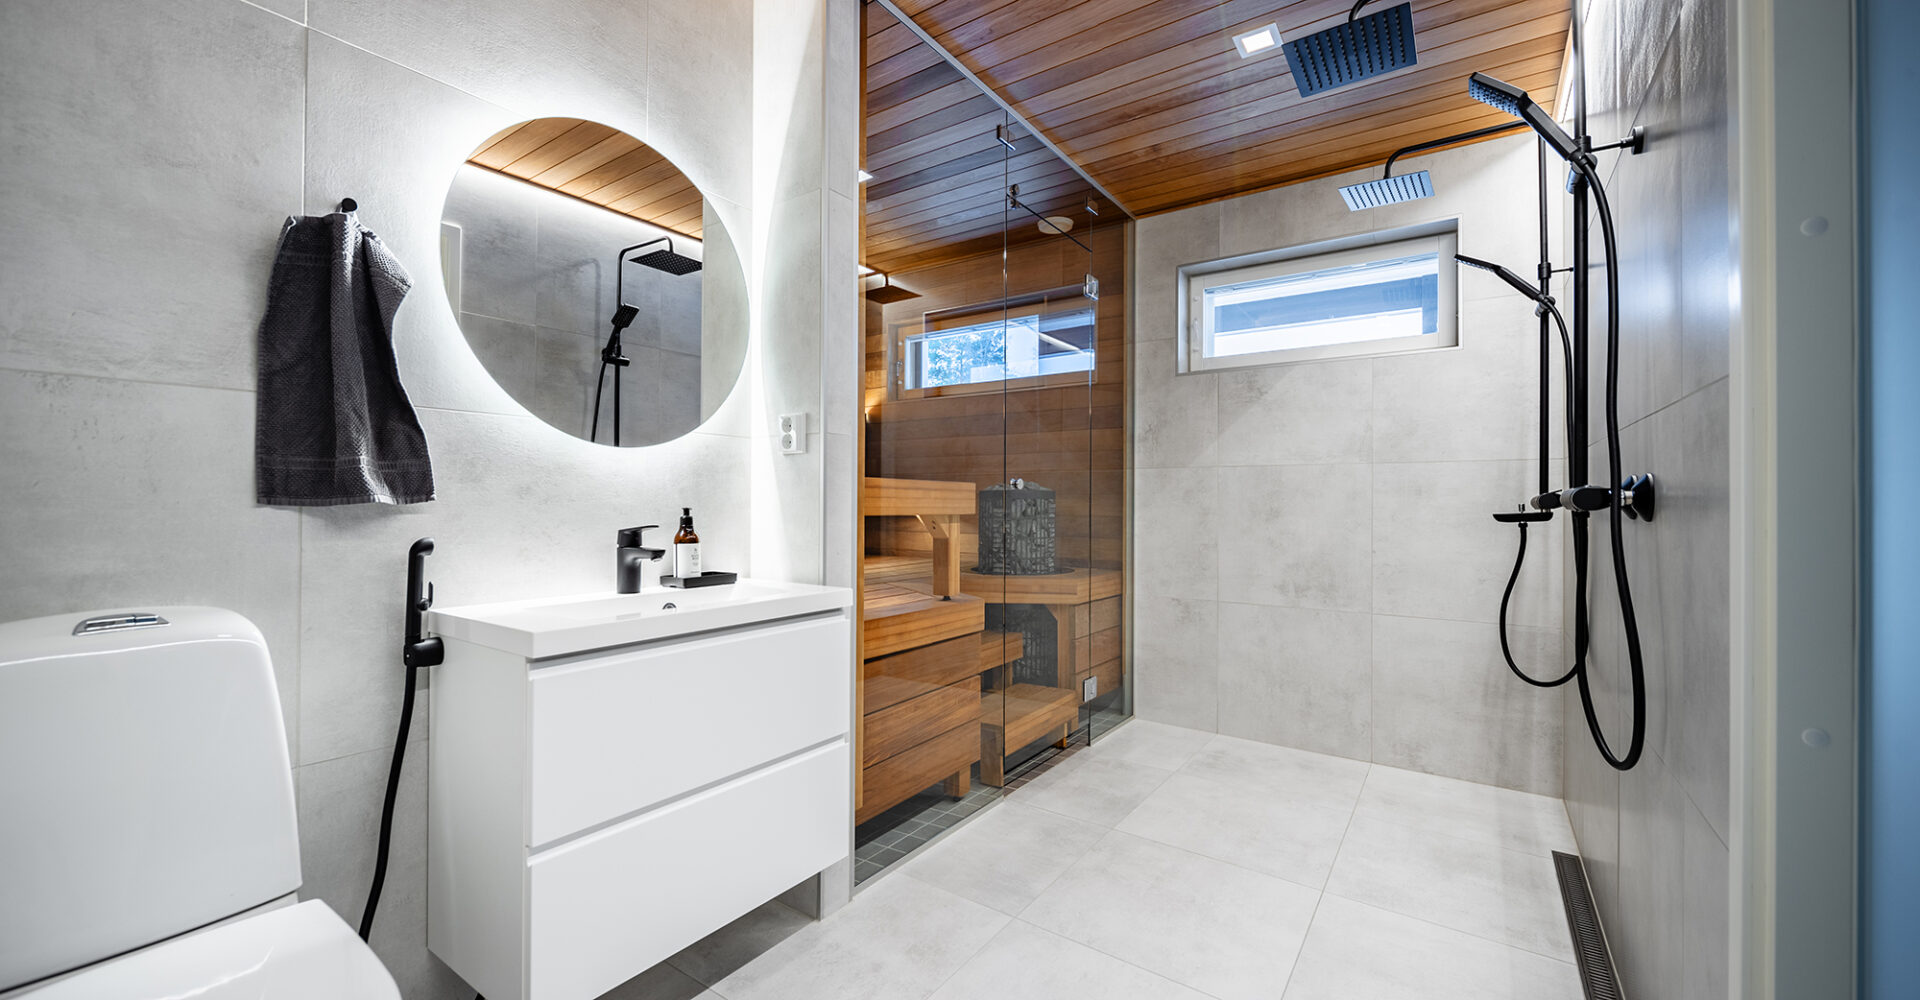 Pesuhuone ja sauna isoilla 60x60 laatoilla lattiassa ja seinissä